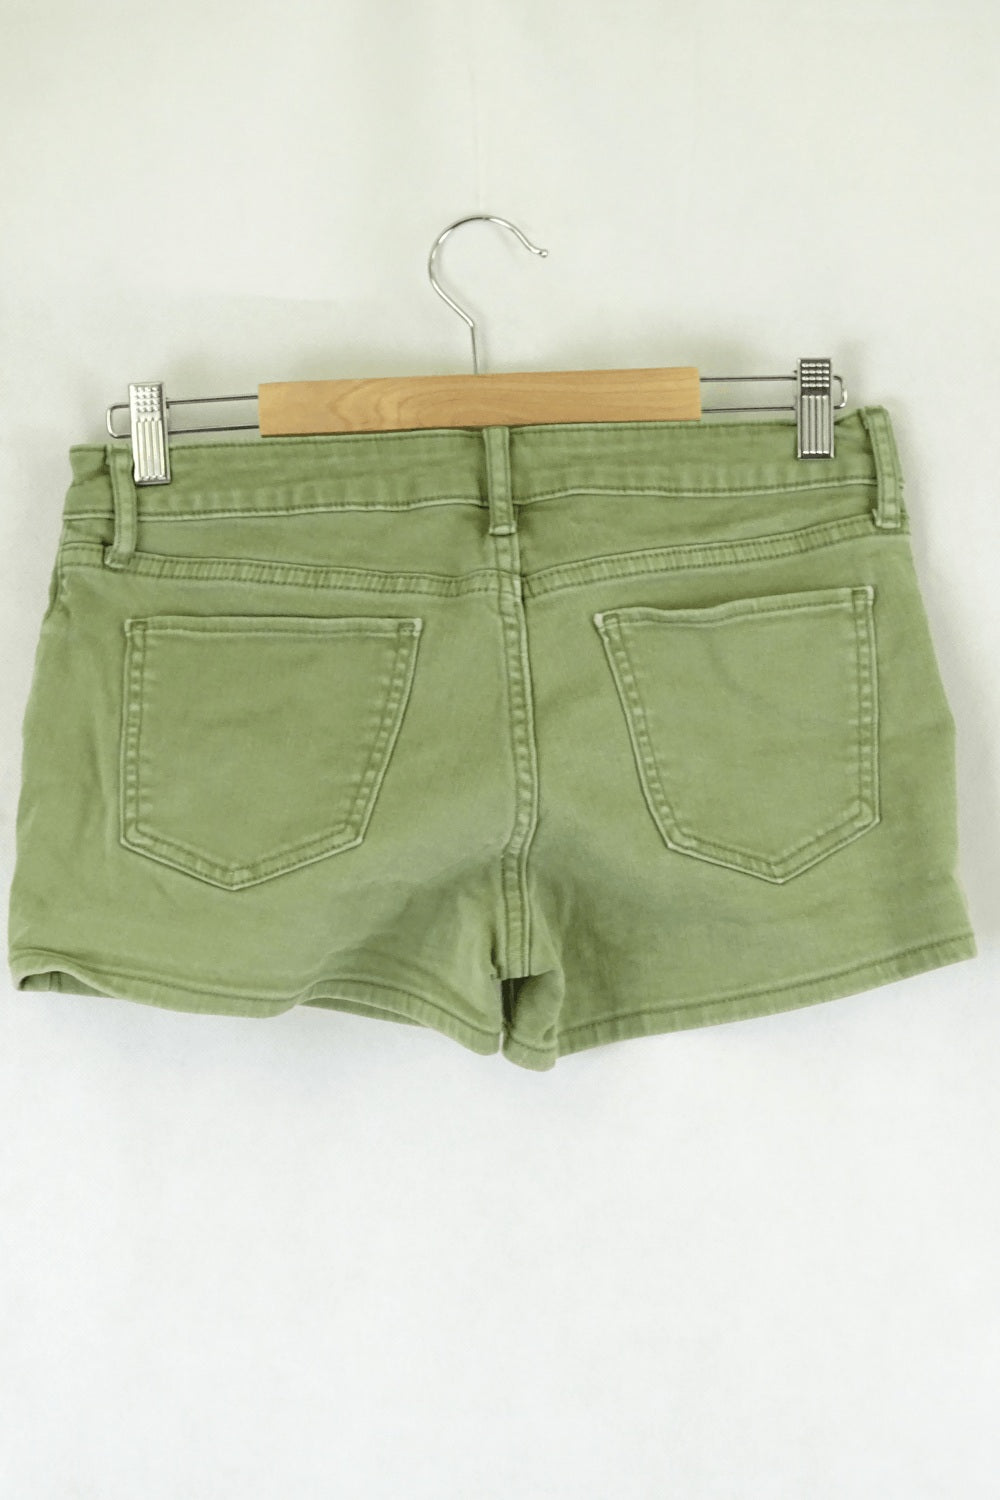 Uniqlo Green Shorts S